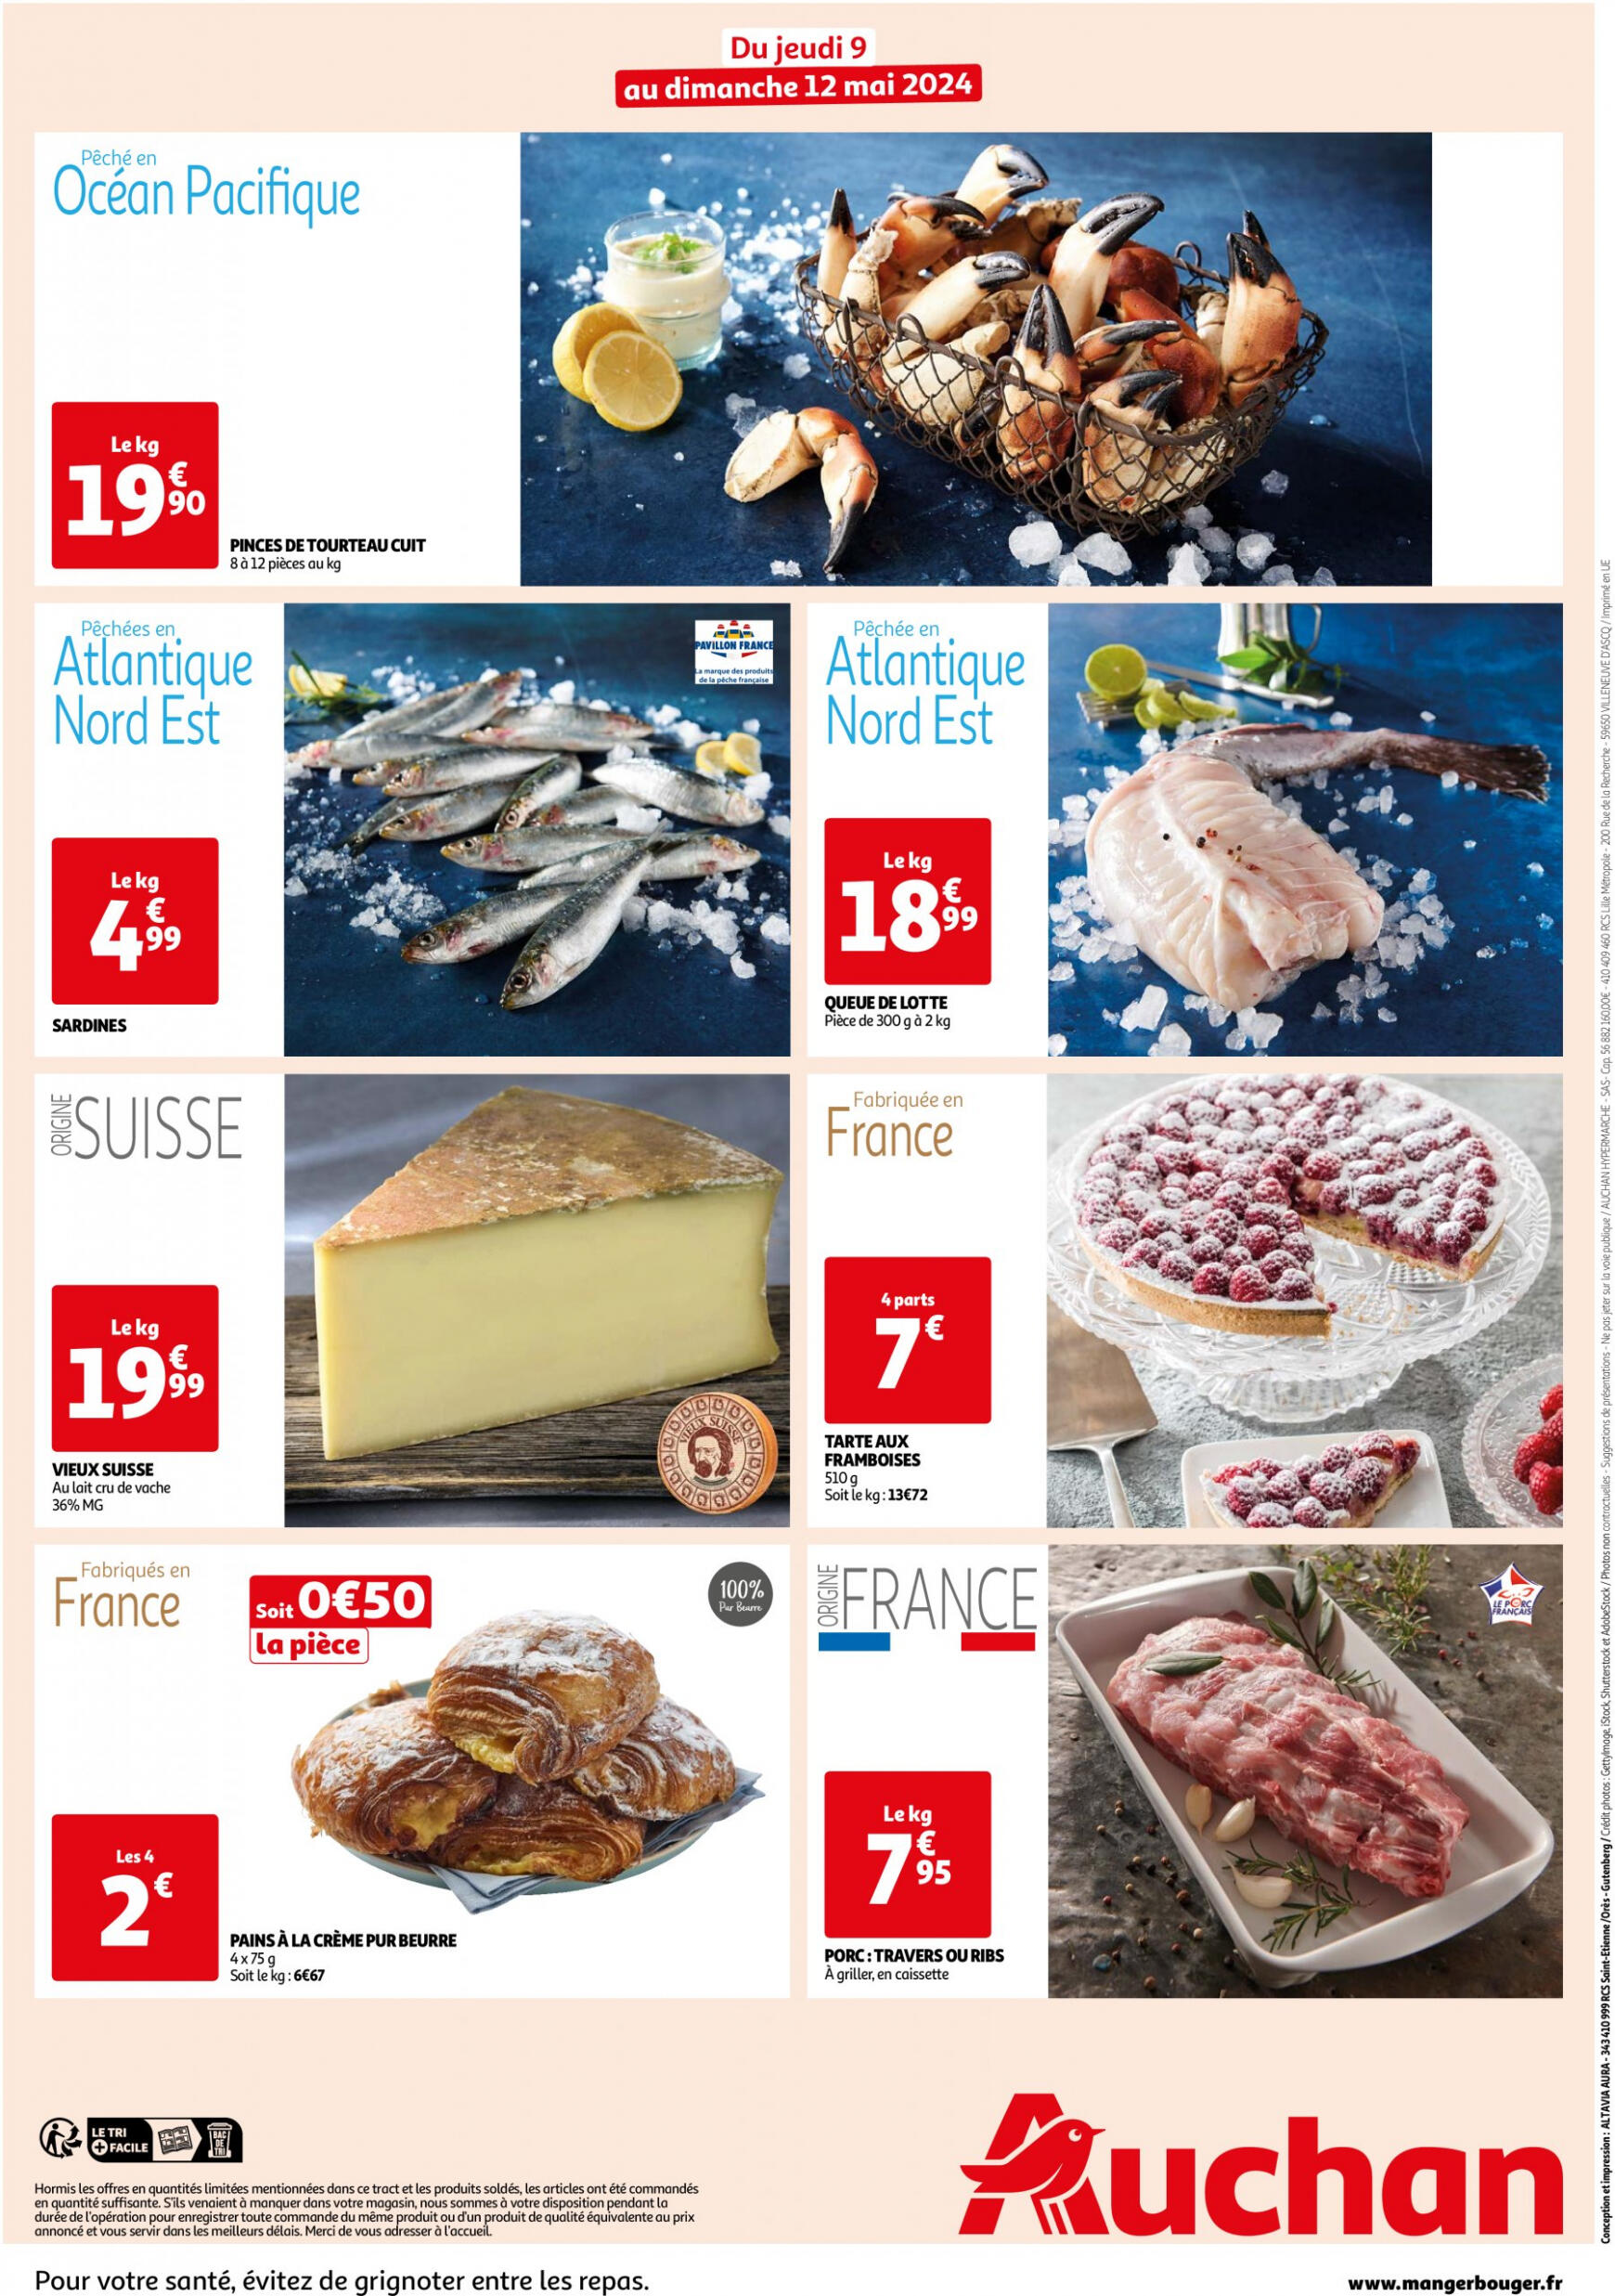 auchan - Auchan - Les bons plans du week-end dans votre hyper folder huidig 09.05. - 12.05. - page: 2